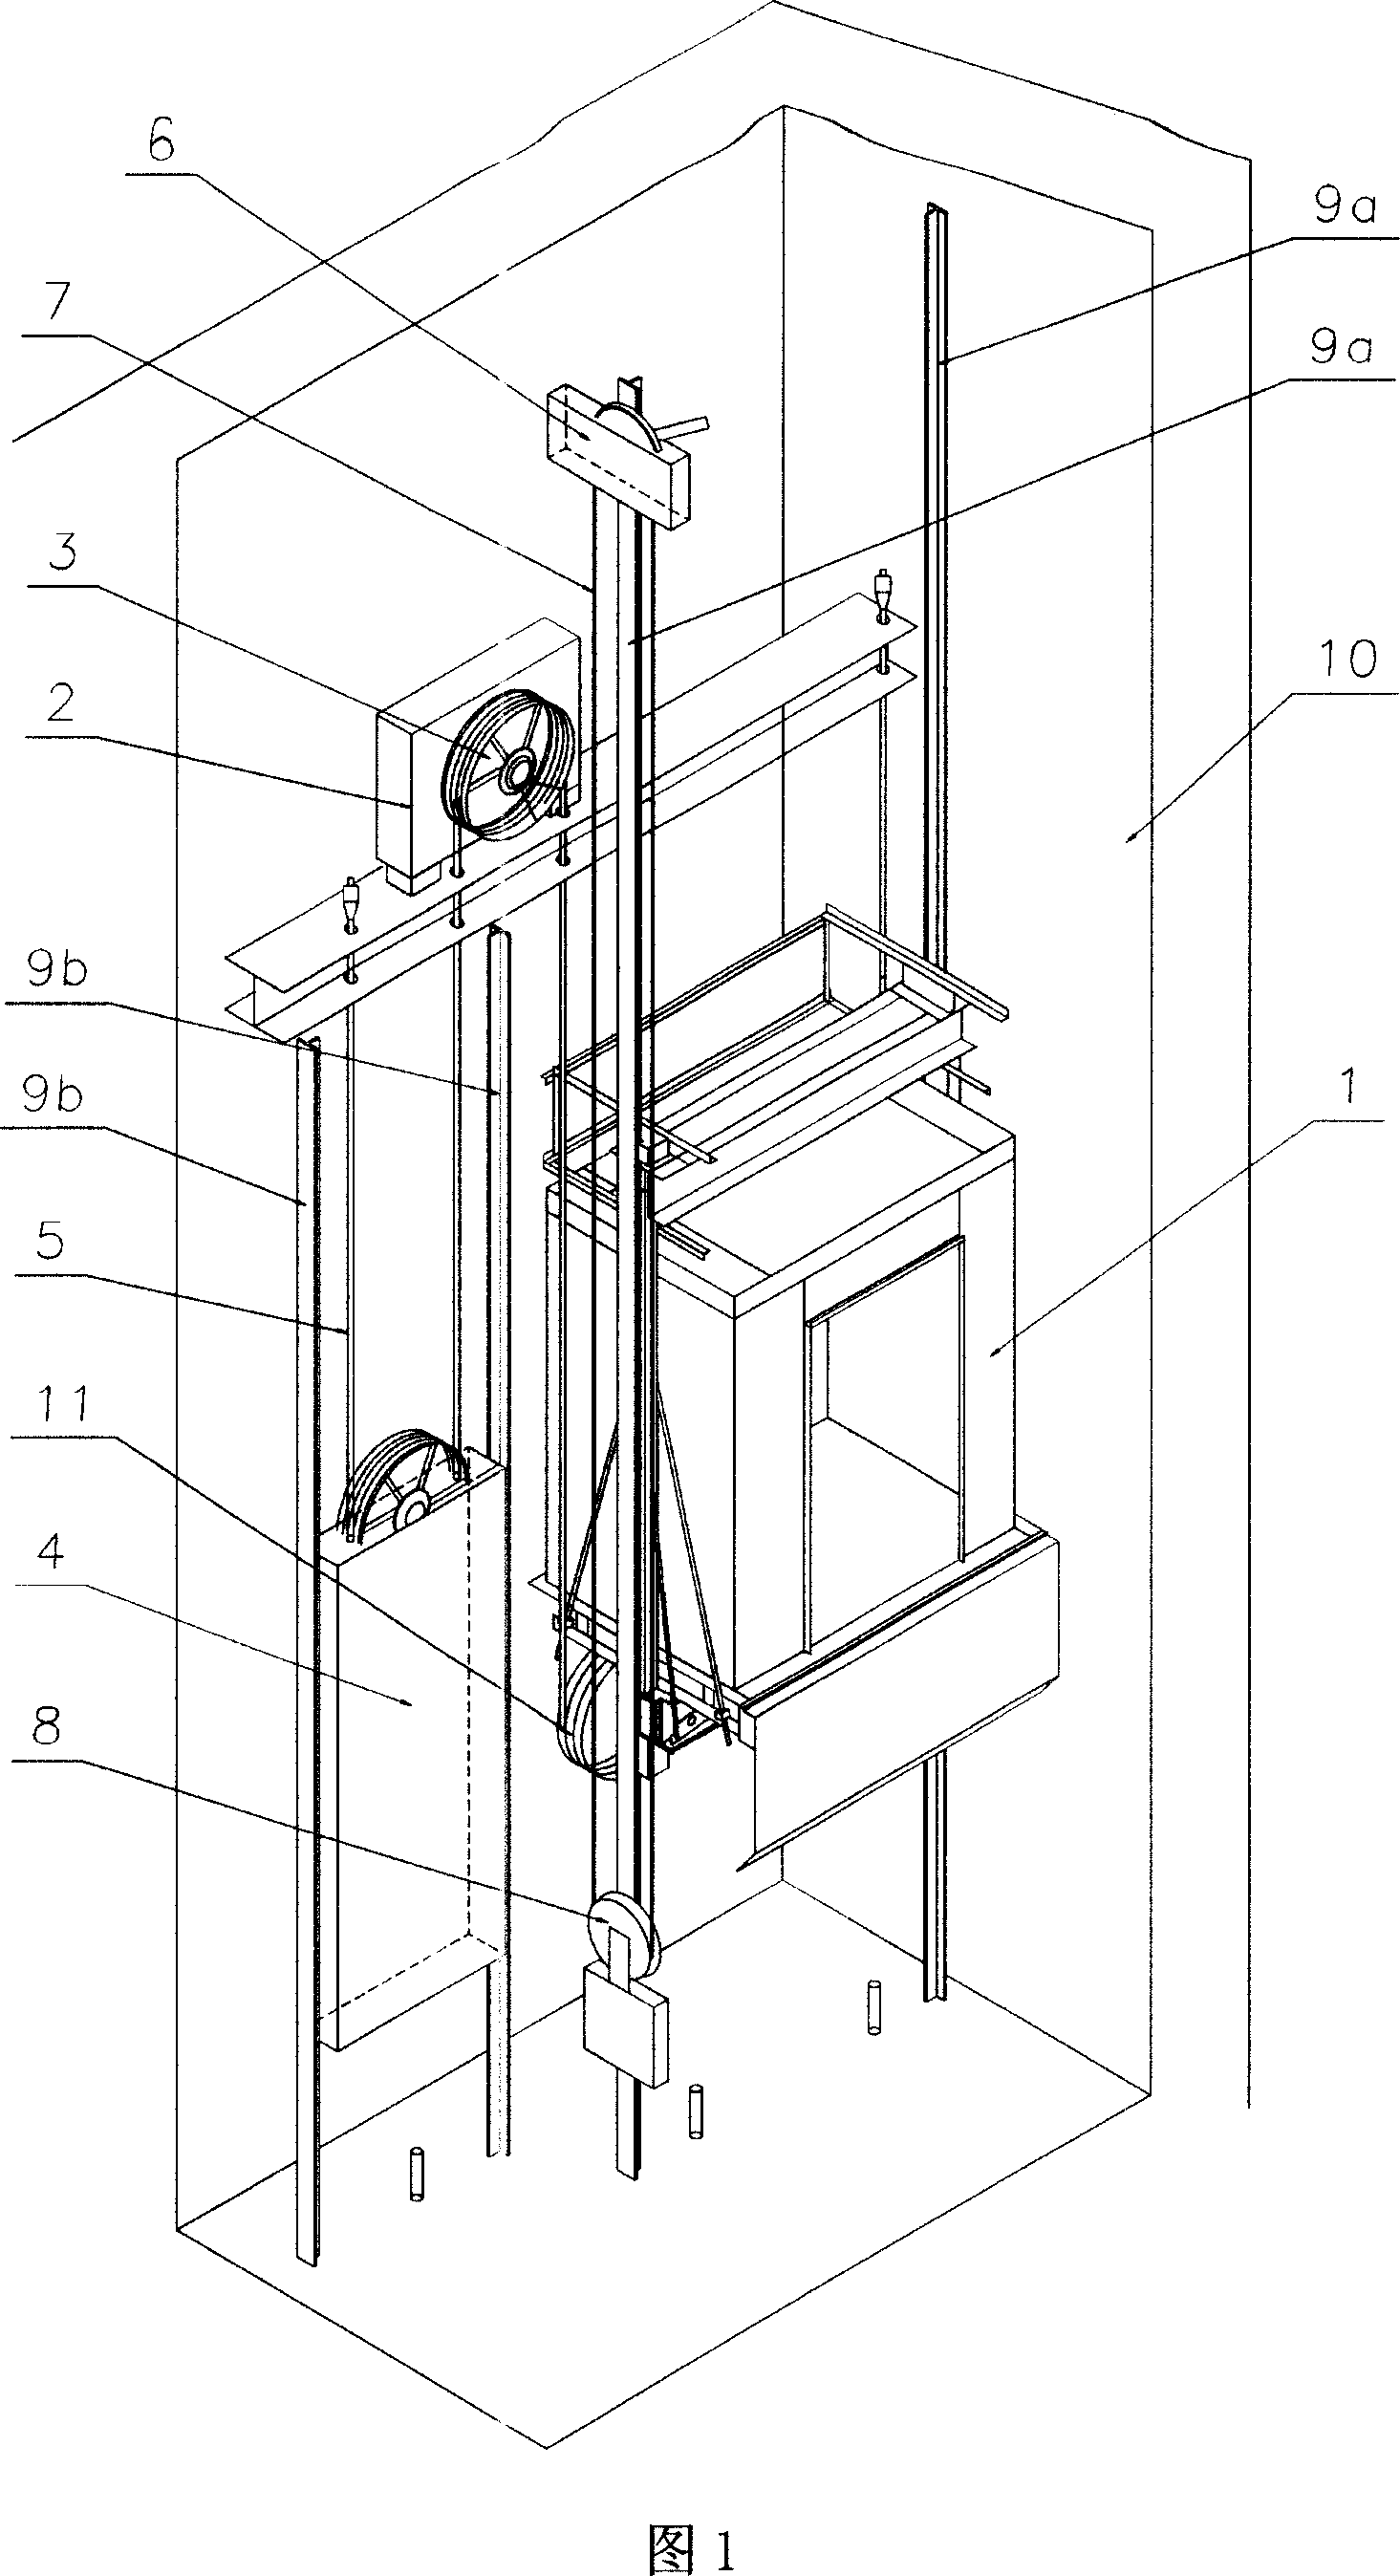 Elevator device